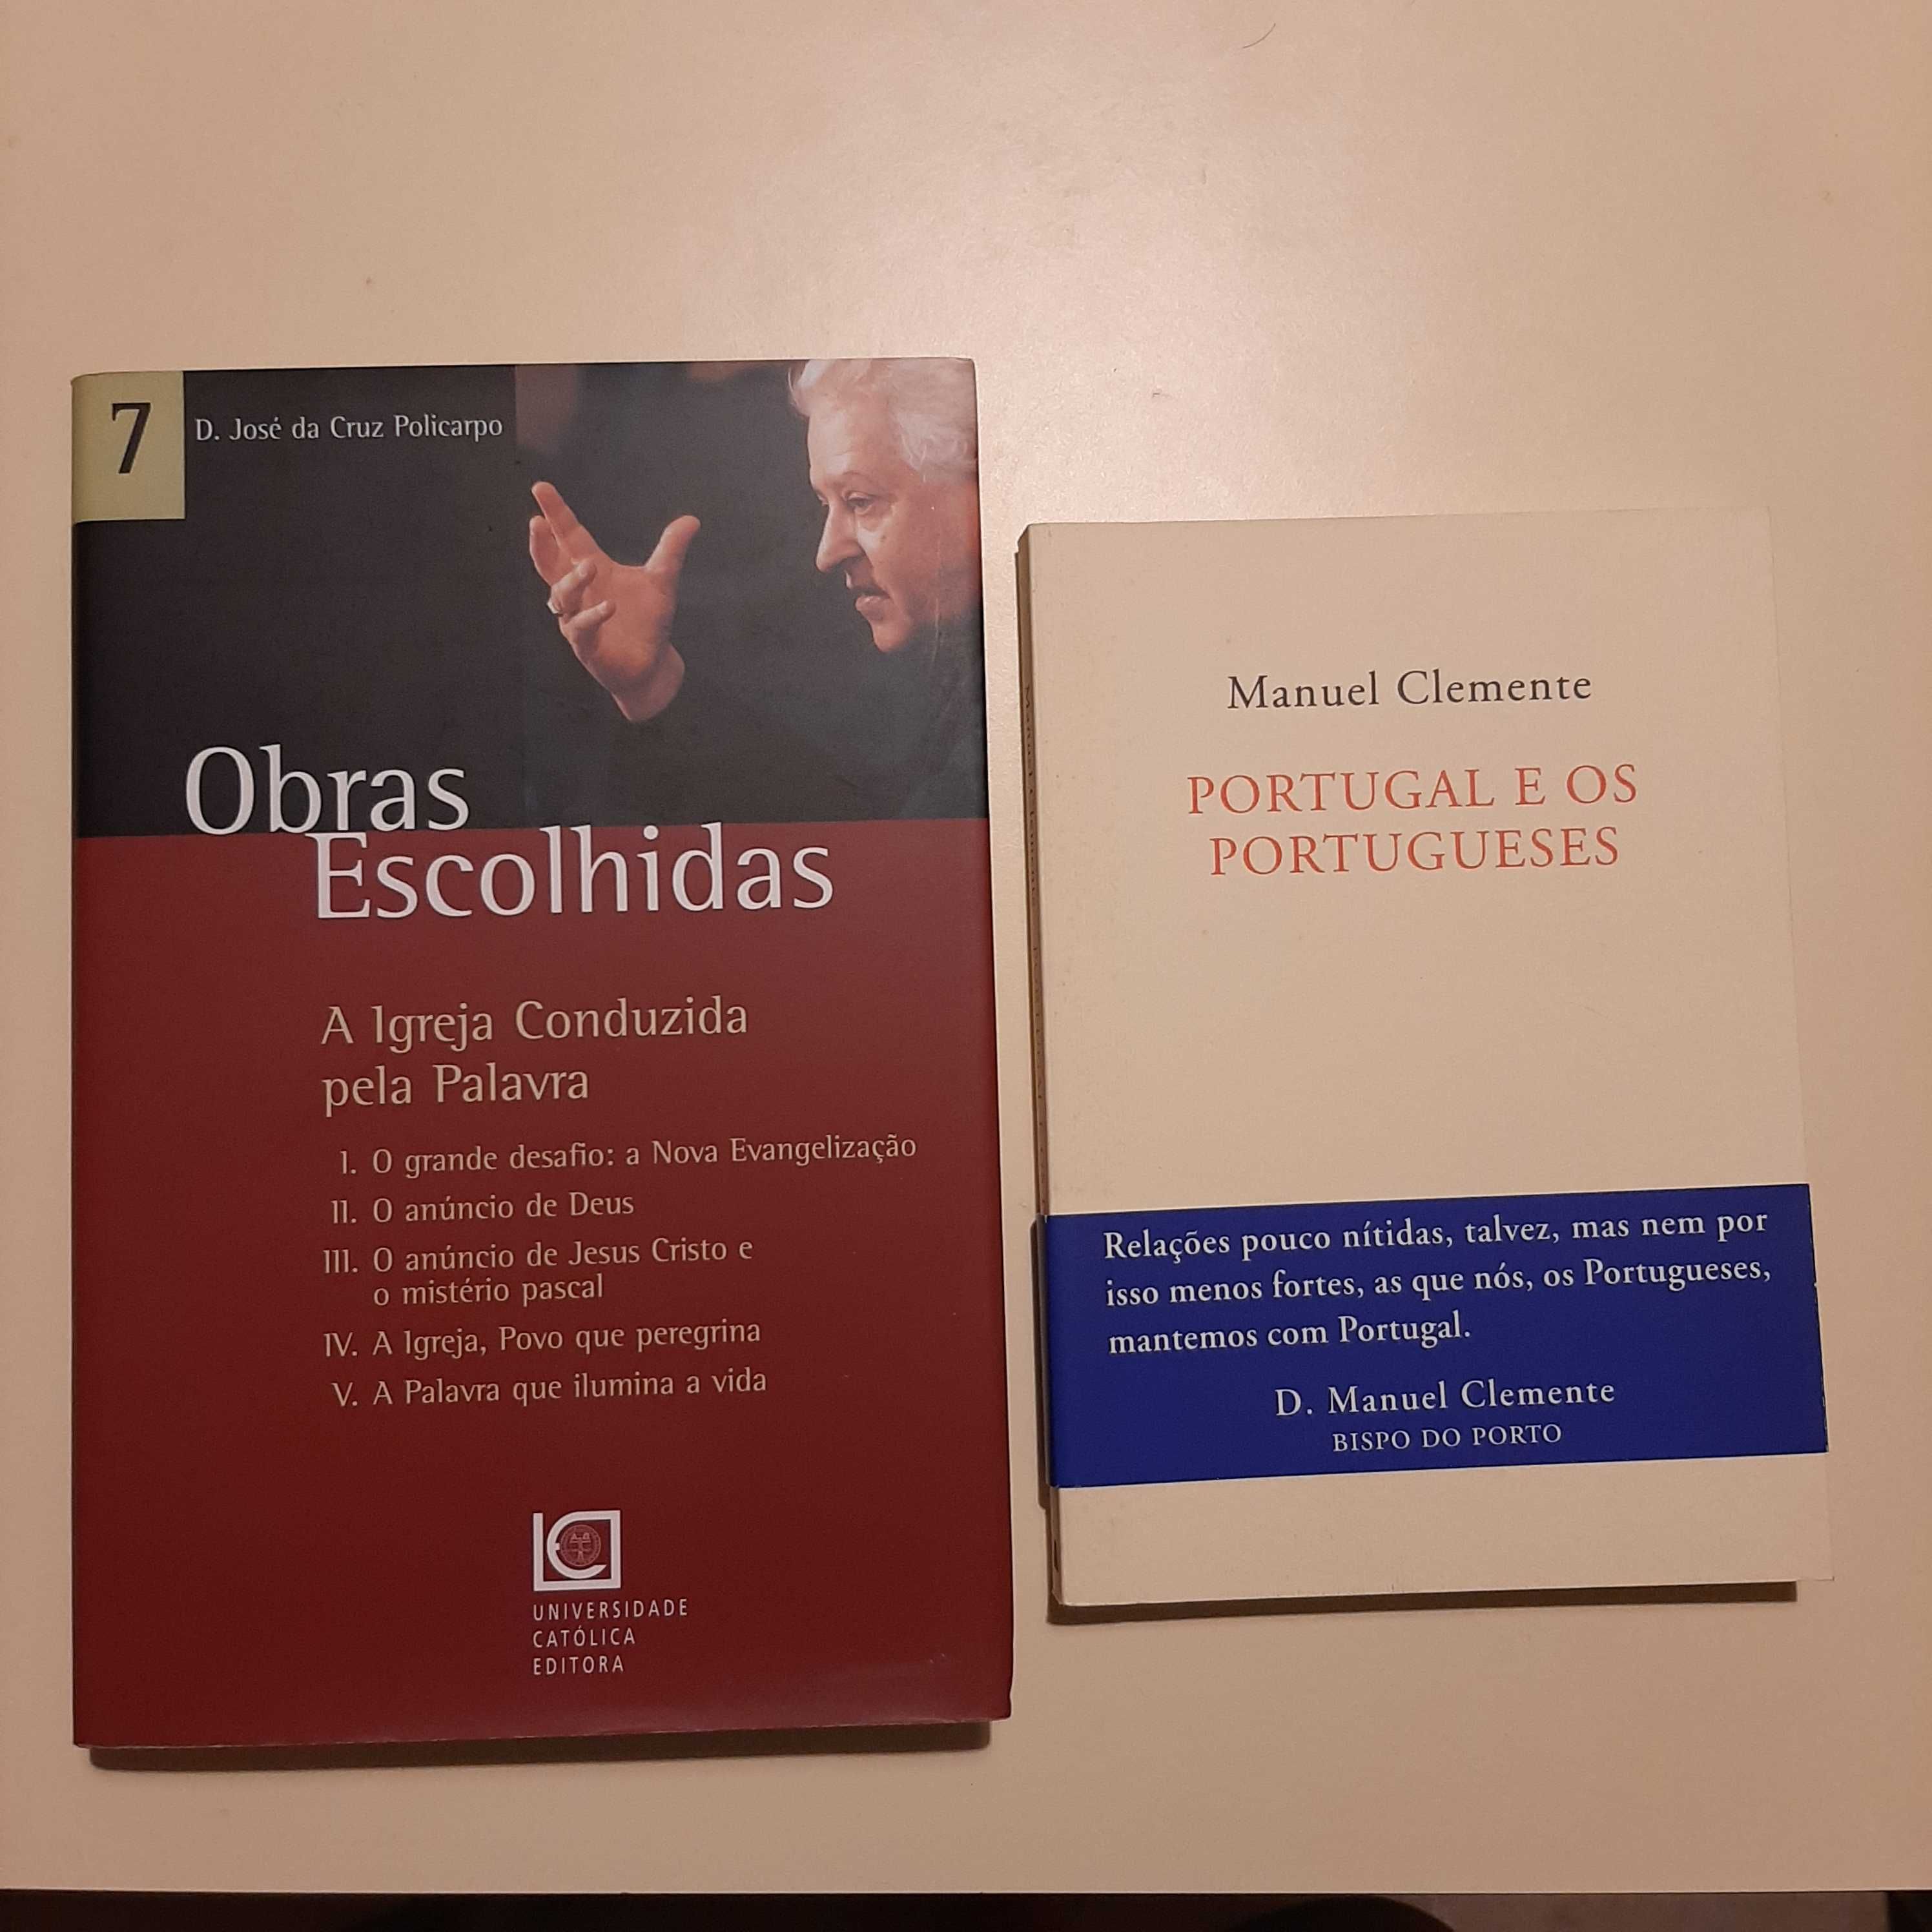 Vendo livros de autores de língua portuguesa sobre religião